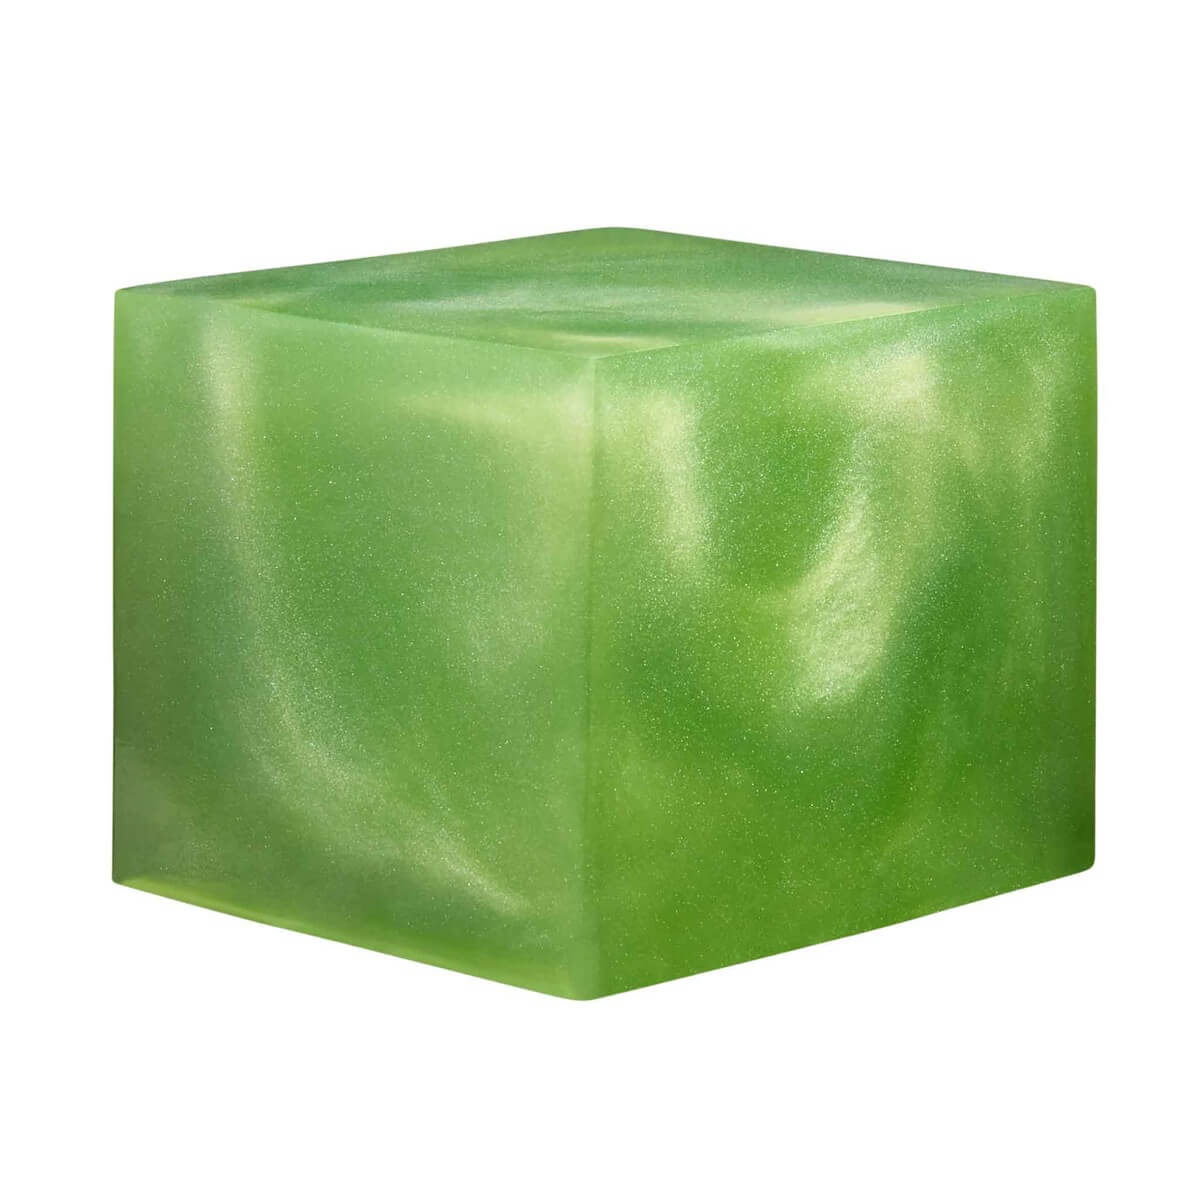 Pistachio-Green-Epoxy-Cube